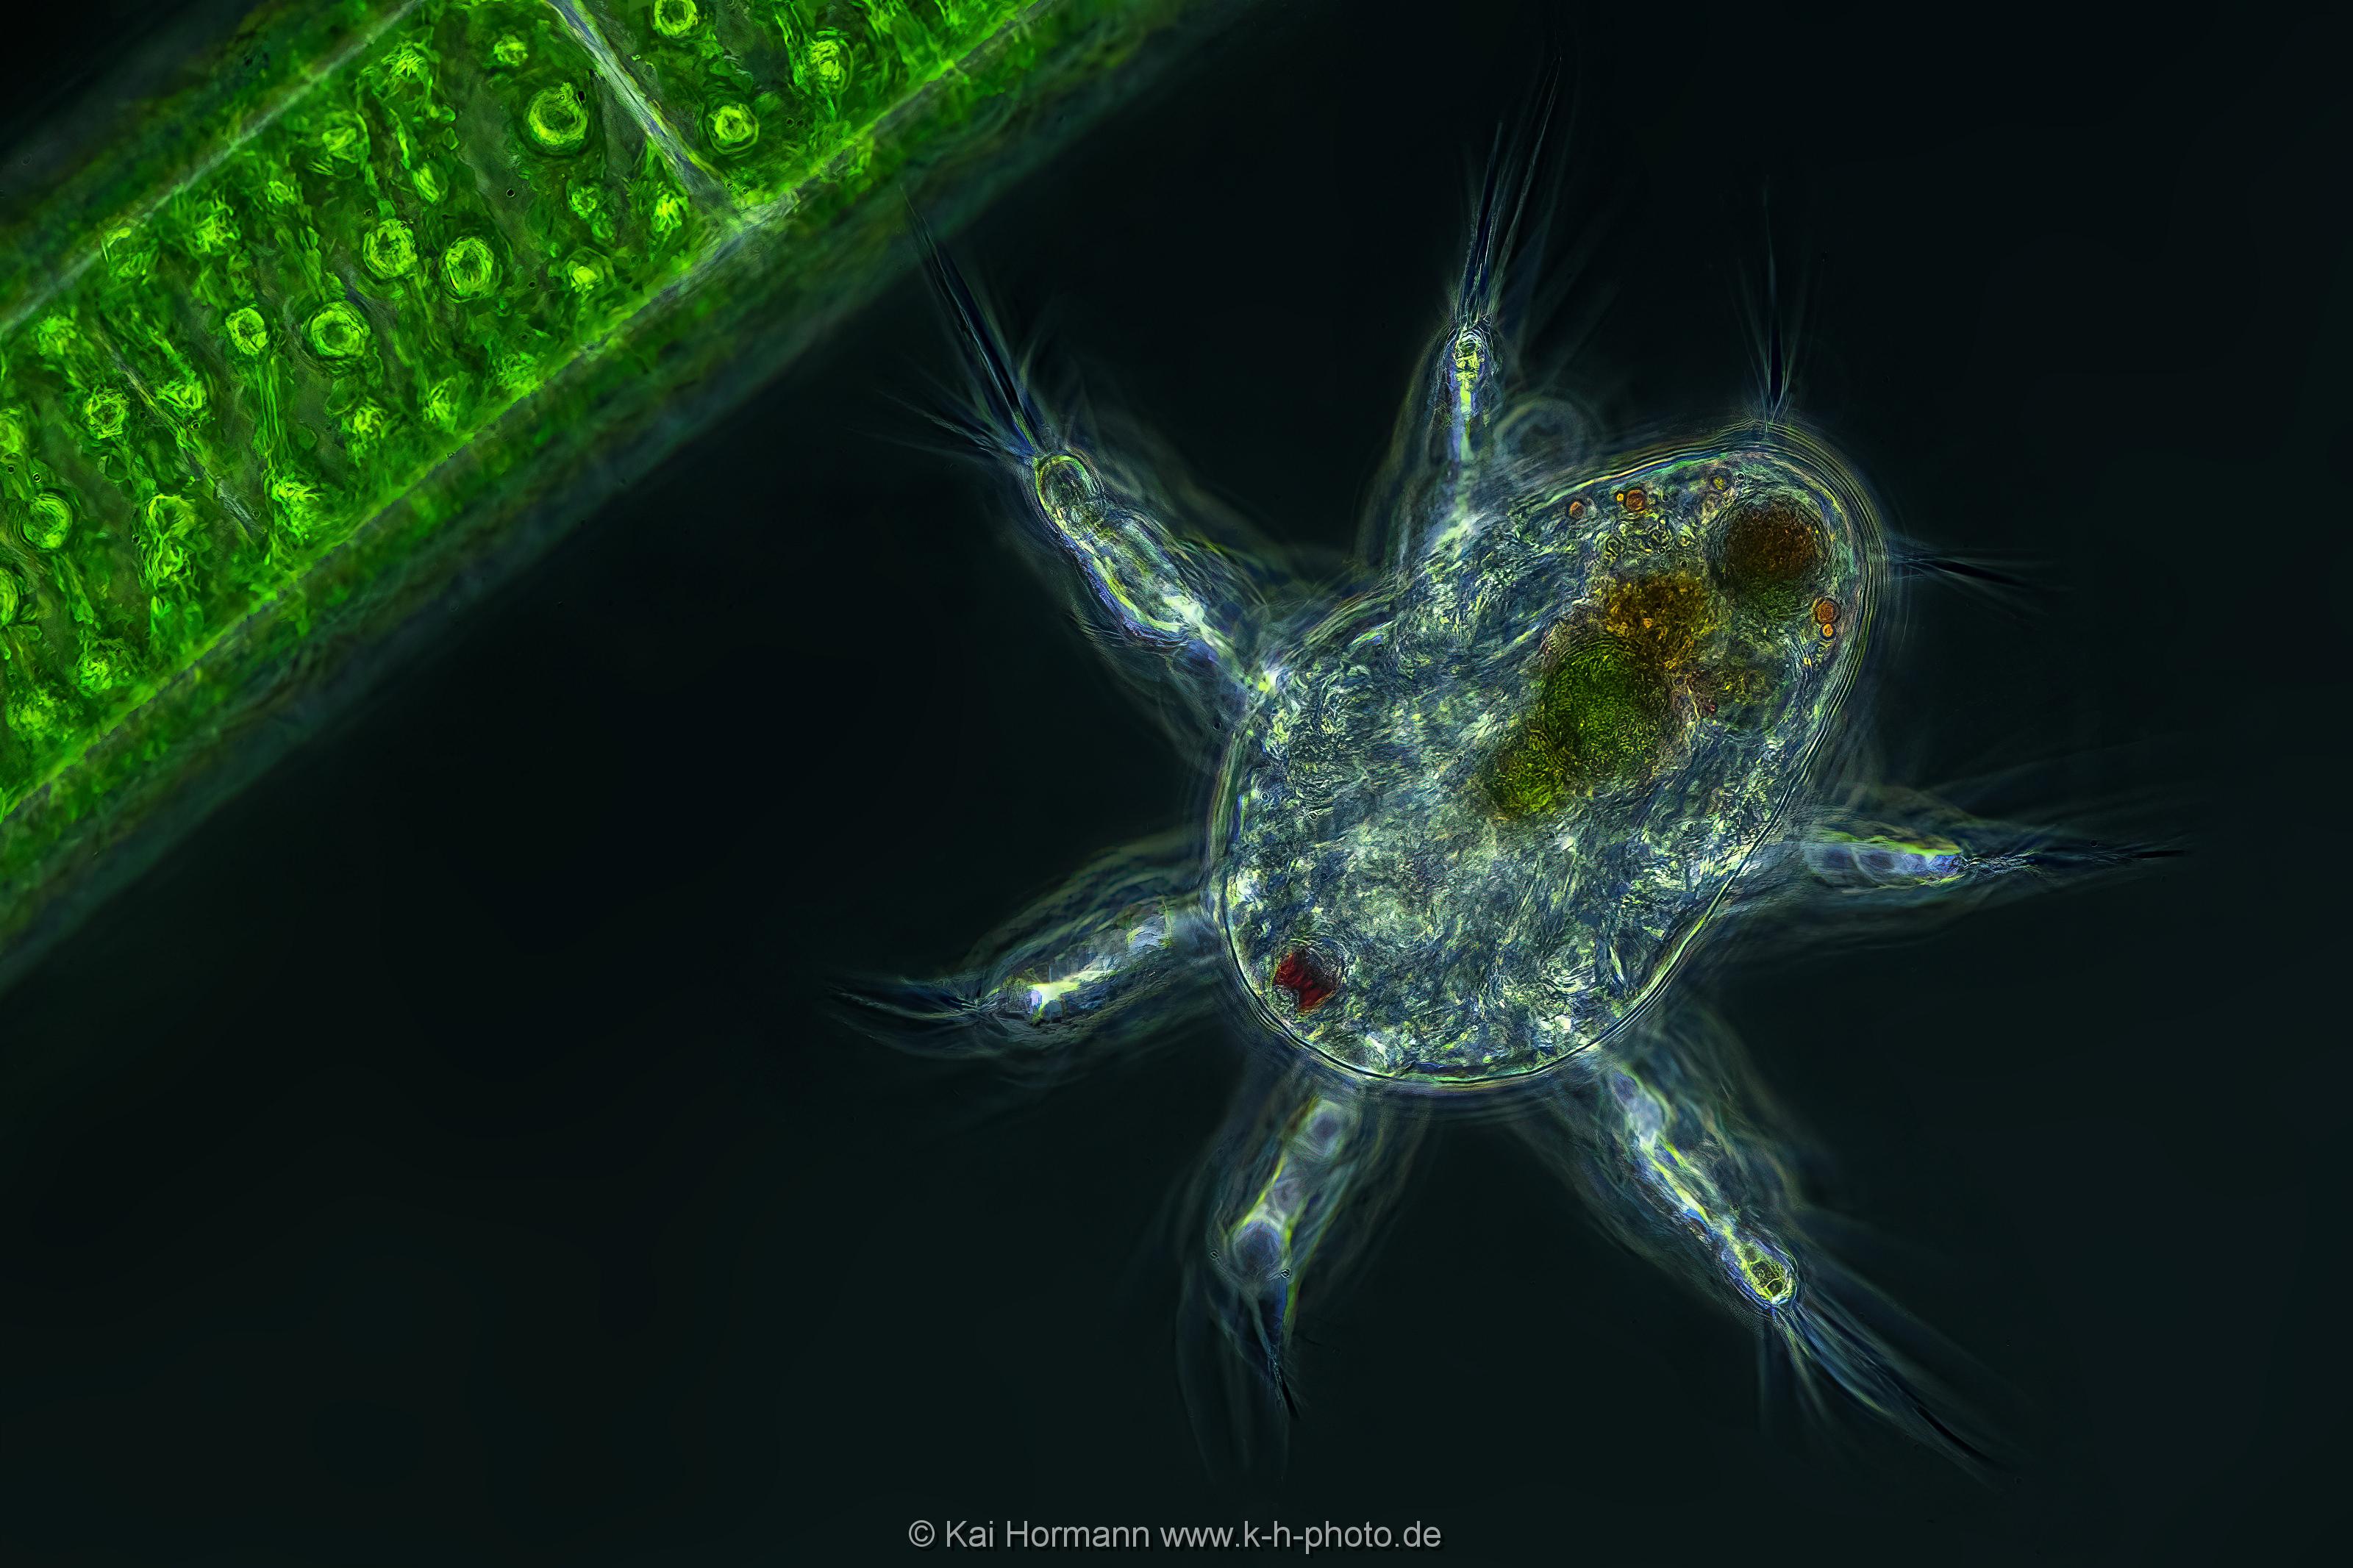 Nauplius Larve eines Ruderfußkrebses neben einer Fadenalge. (Phasenkontrast-Aufnahme) Mikrofotografie: Mikroskopische Aufnahmen von Einzellern, Algen und Kleinstlebewesen.